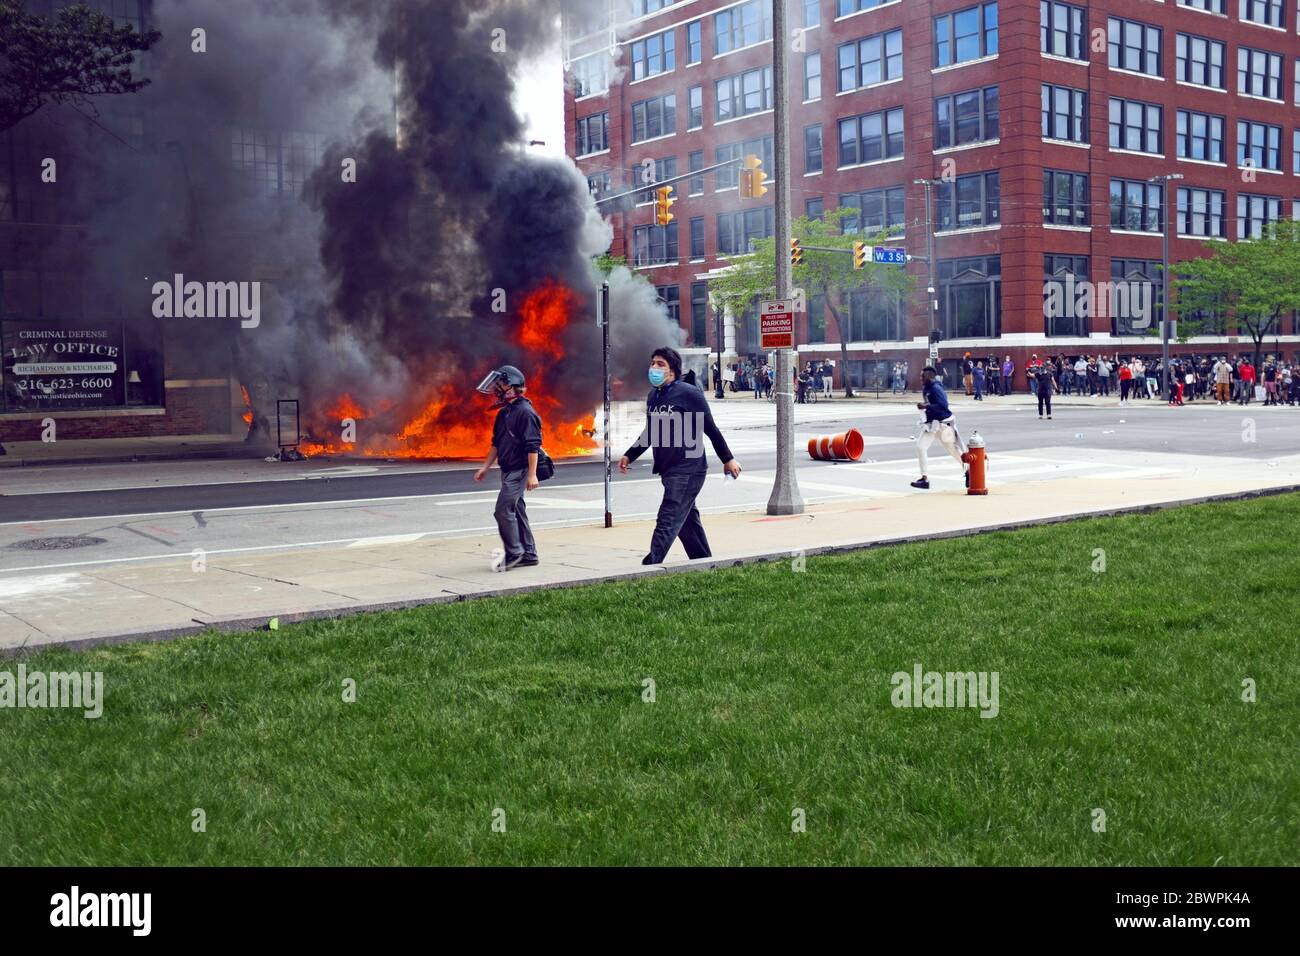 Dos coches de policía estallaron en un incendio frente al Centro de Justicia durante la protesta de George Floyd en Cleveland, Ohio, EE.UU. Foto de stock